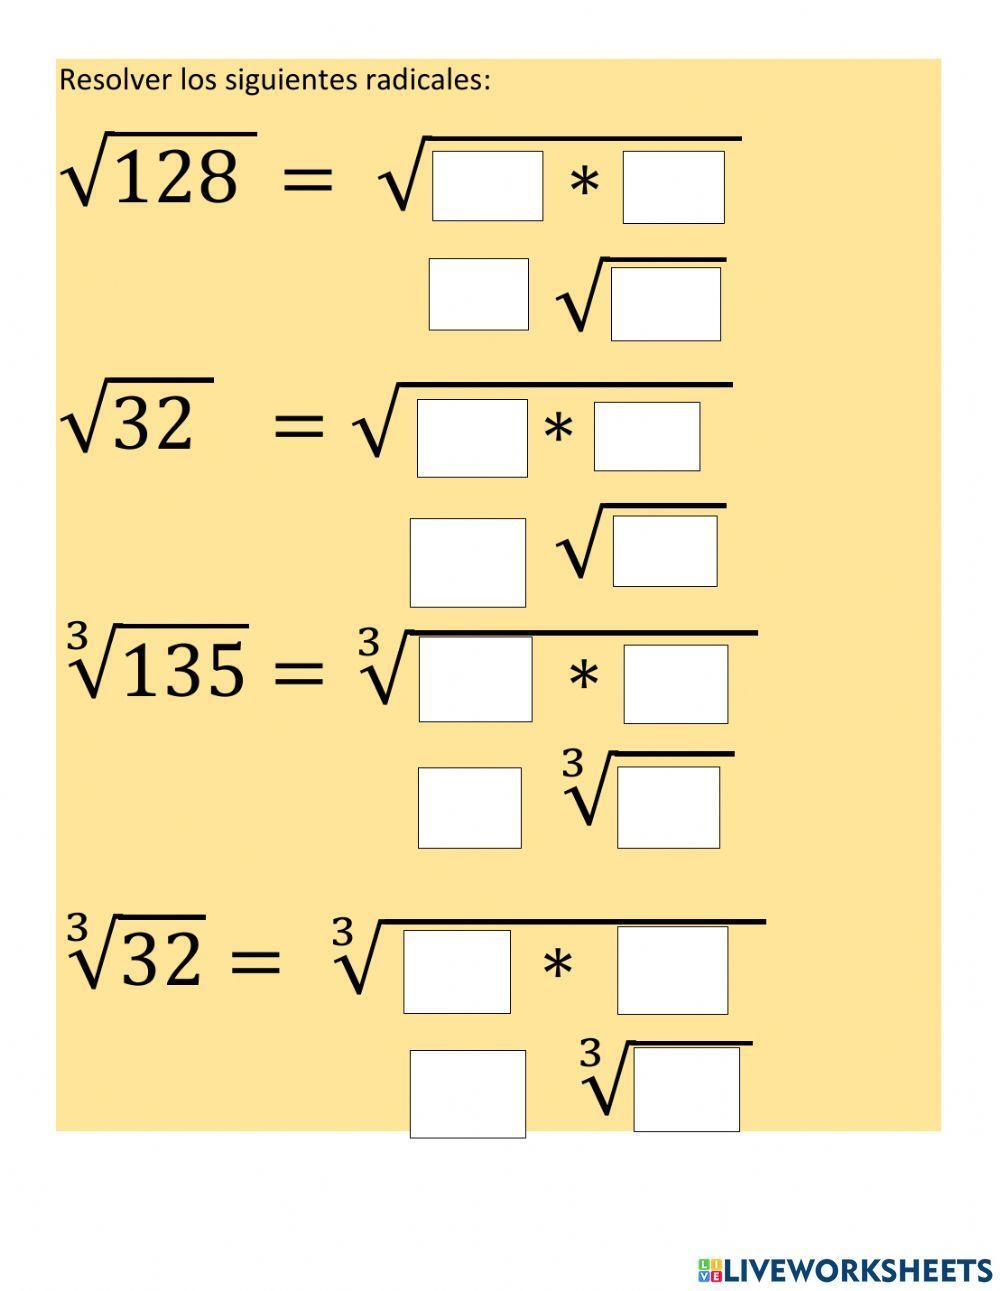 Tema 3: Simplificación de raices cuadradas